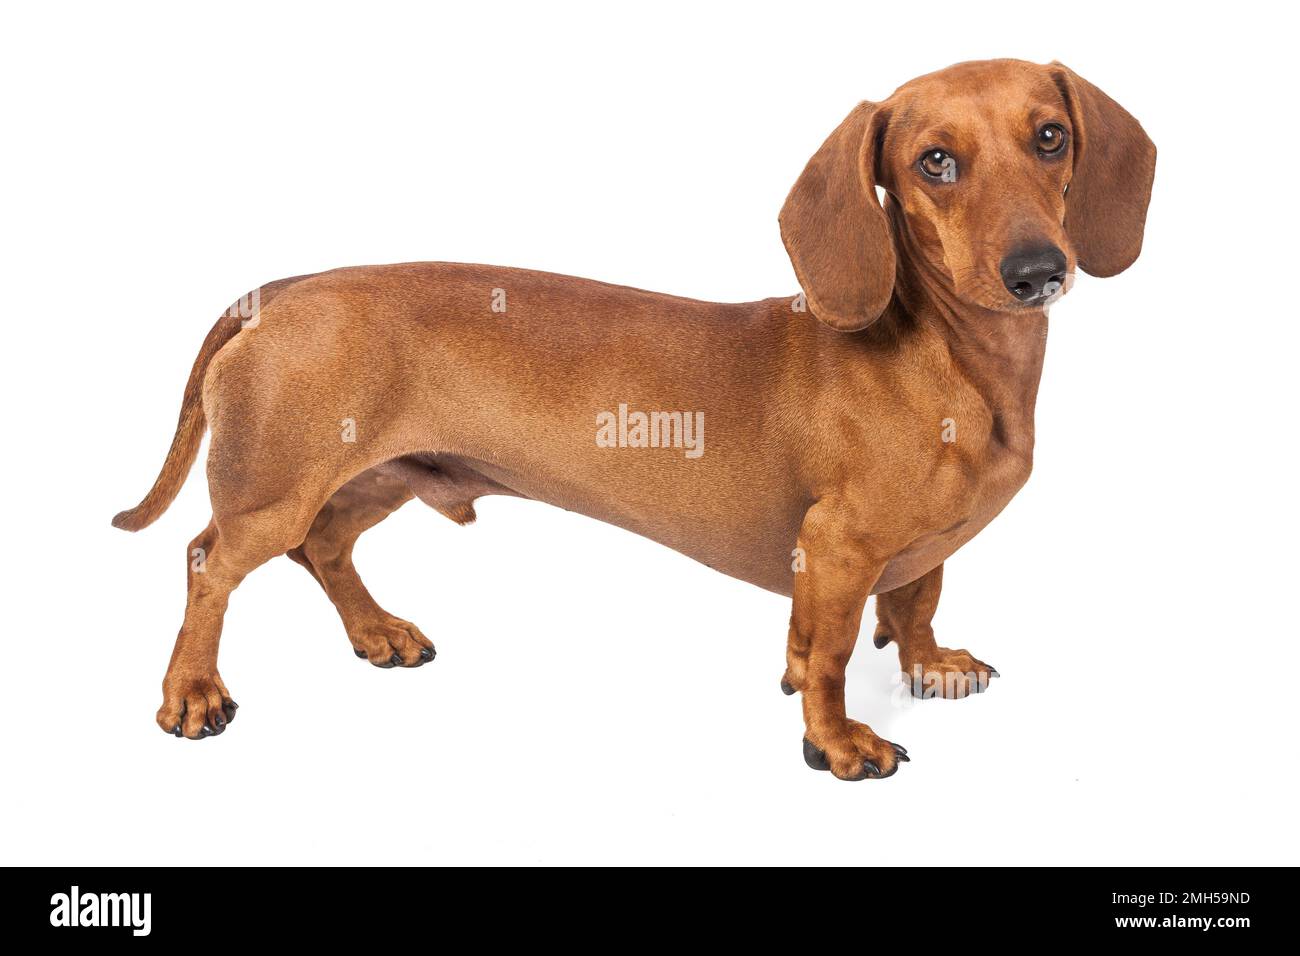 Dachshund dog isolated on white background Stock Photo